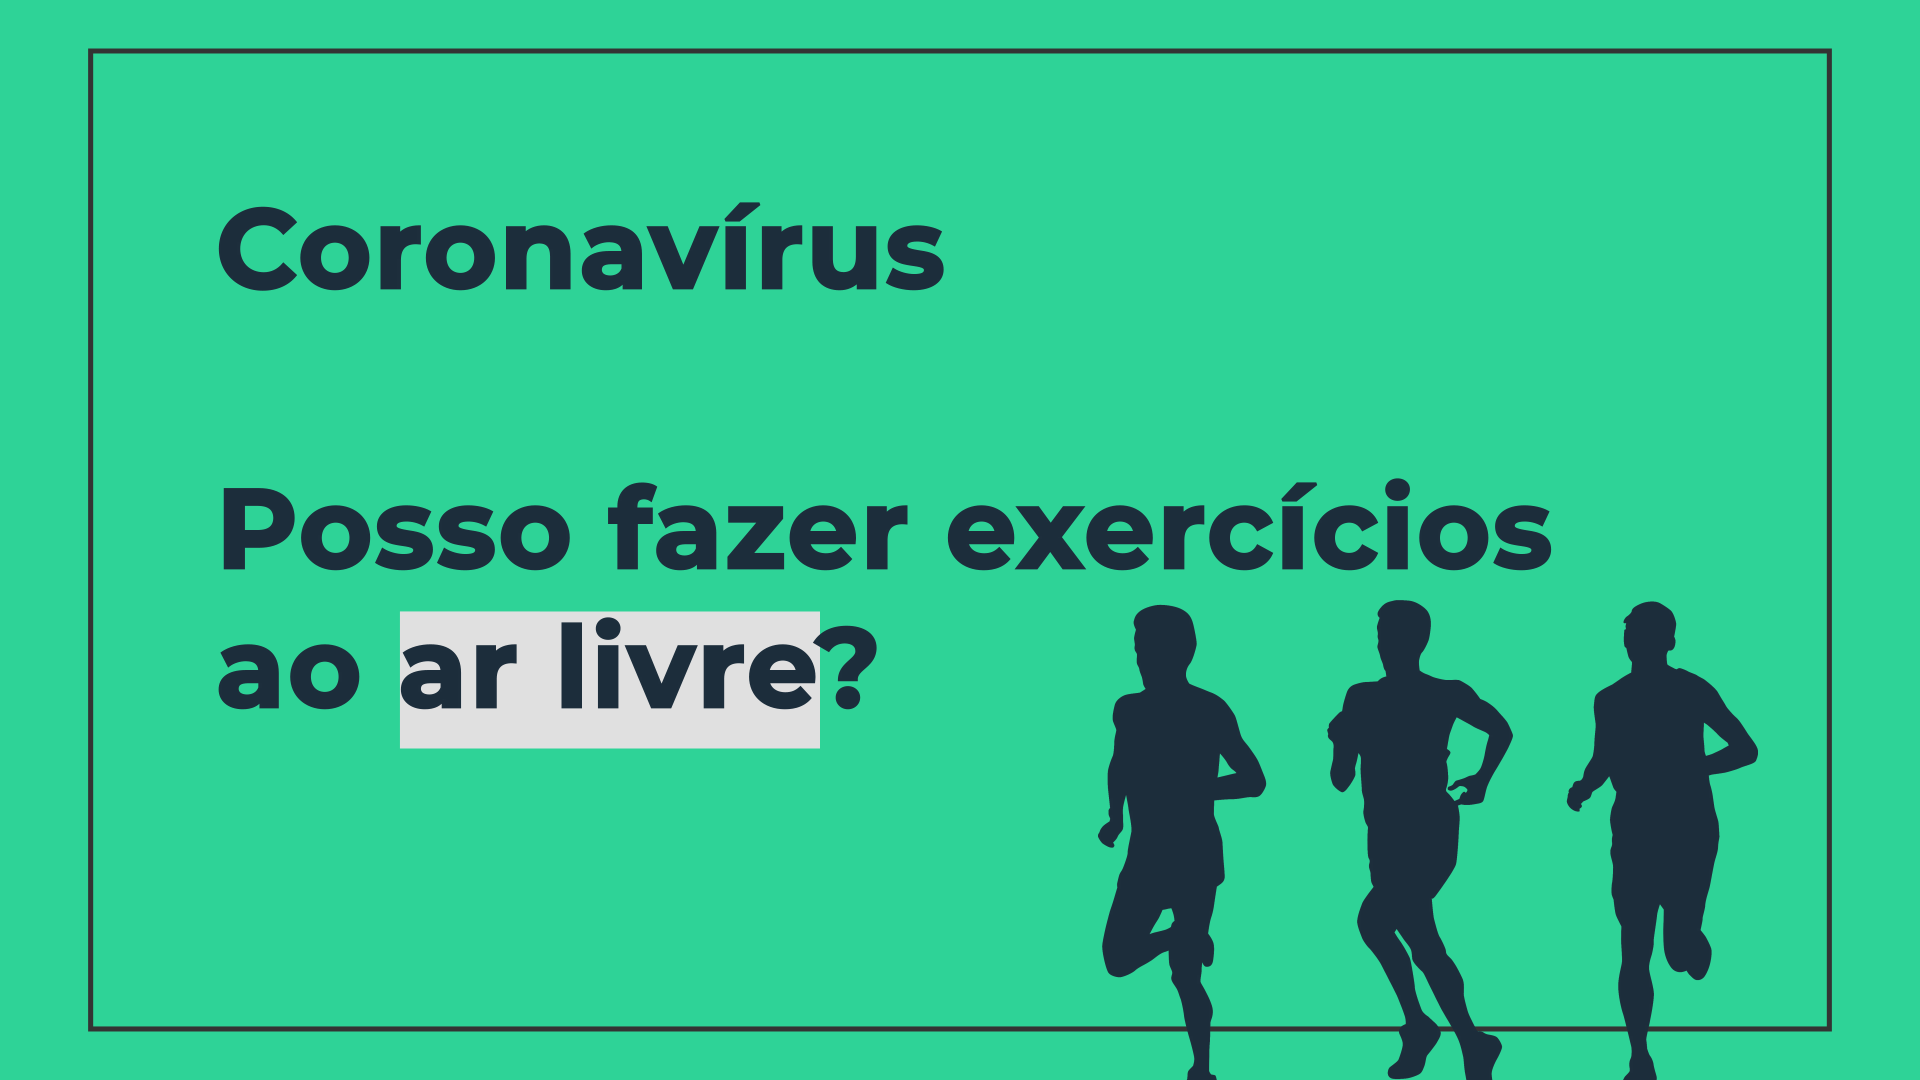 Posso fazer exercícios ao ar livre durante o distanciamento social do novo Coronavírus?